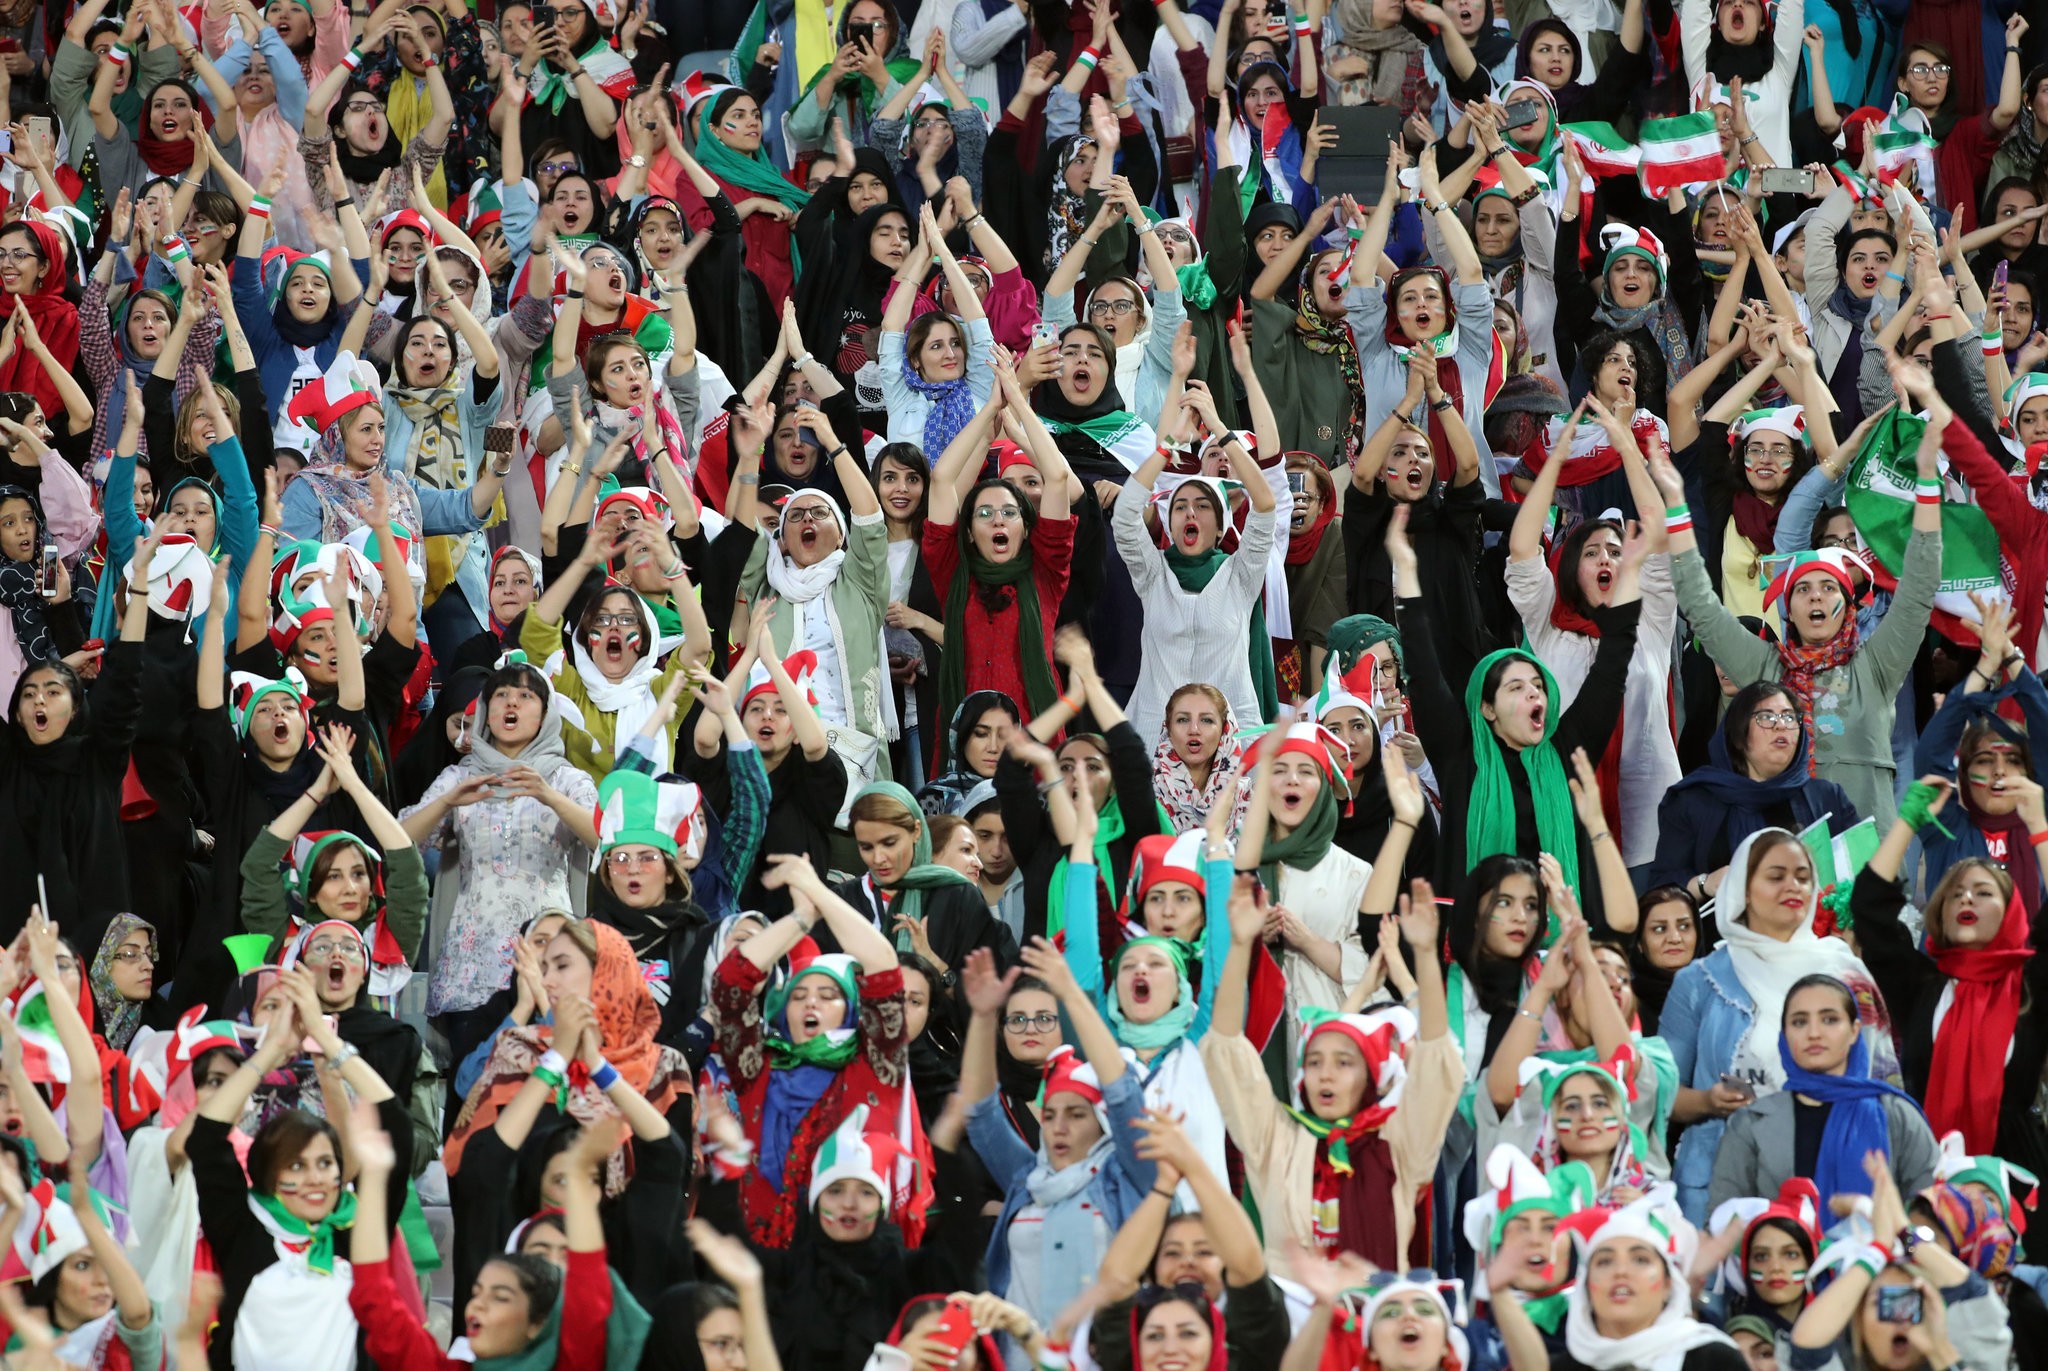 حضور زنان برای تماشای بازی فوتبال بازی استقلال و مس کرمان مجاز شد